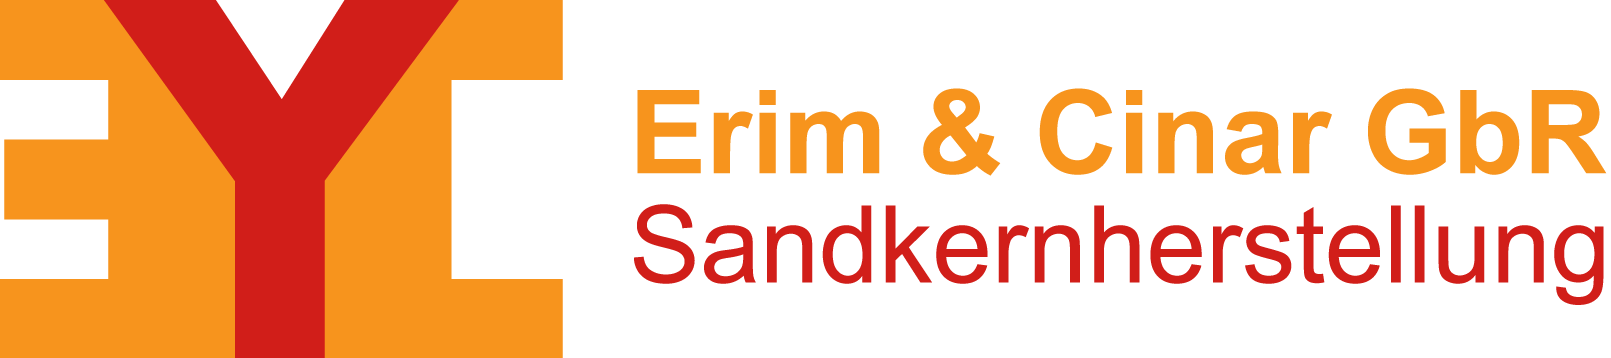 Sandkernherstellung – Erim & Cinar GbR